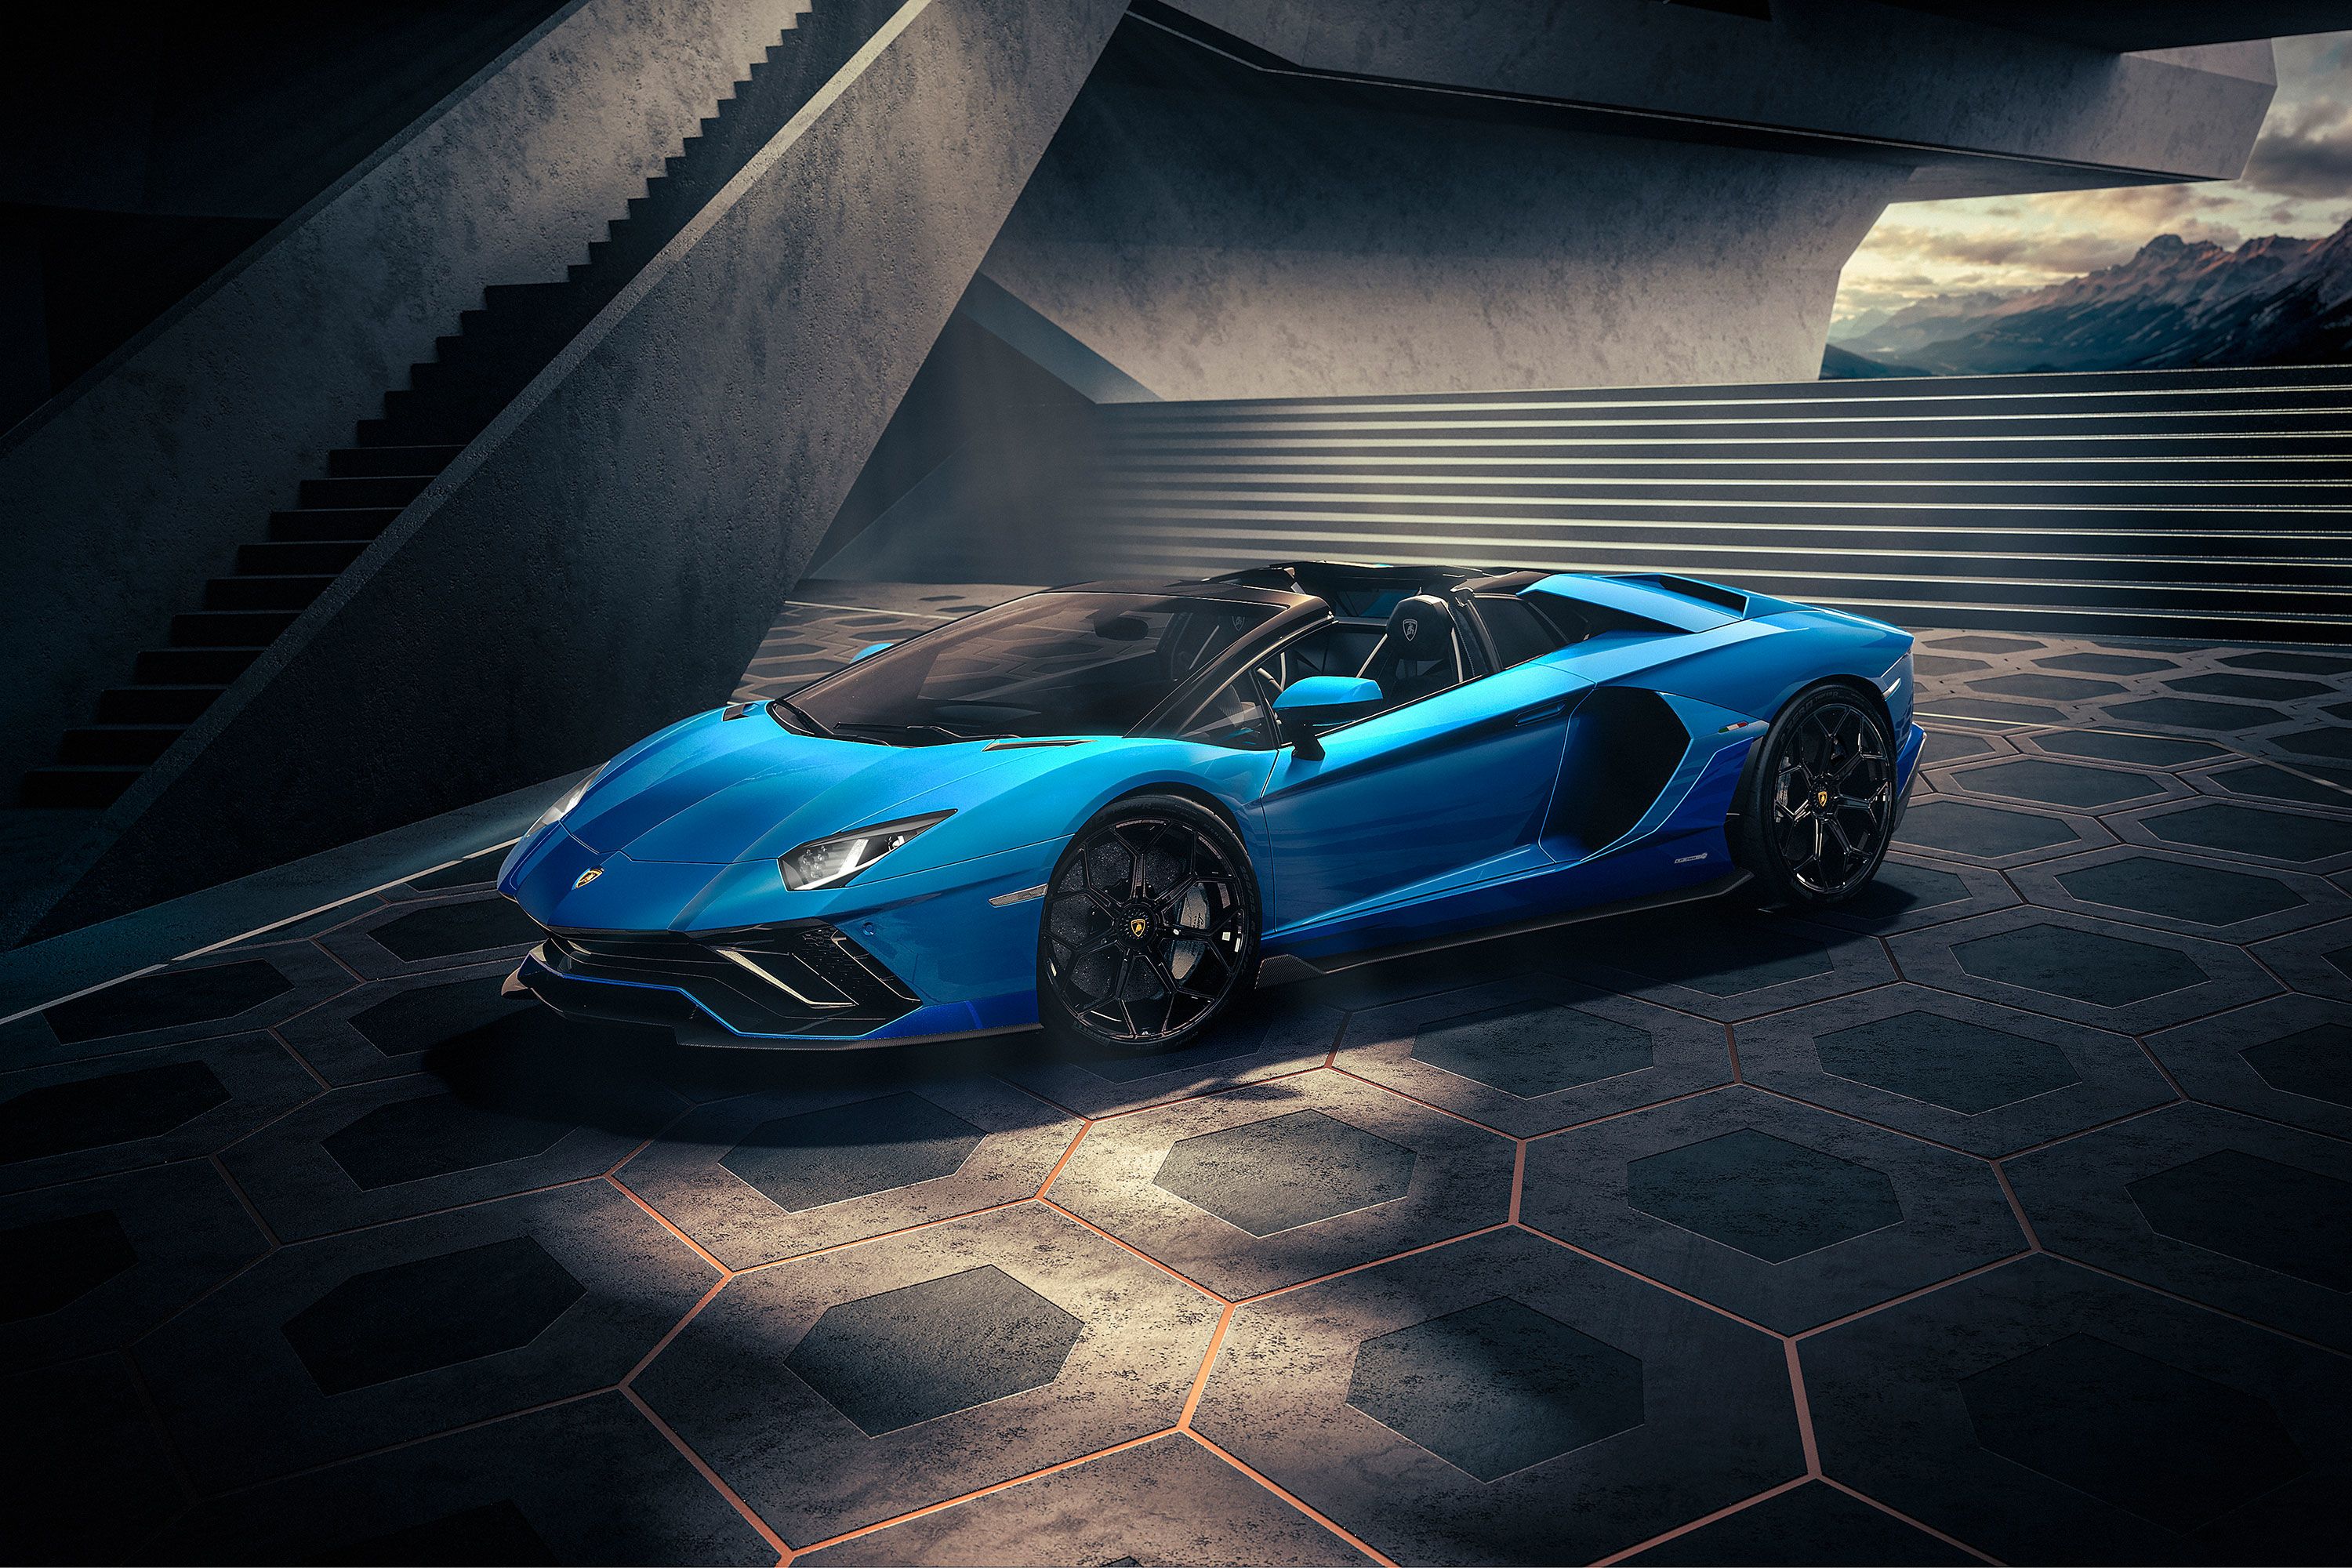 Lamborghini và Lotus: Lamborghini và Lotus đều là những chiếc xe hơi được đánh giá cao về hiệu suất và tốc độ. Hãy xem hình ảnh về những chiếc xe này để được một cái nhìn sâu sắc về sự độc đáo và tinh tế của những mẫu xe này. 